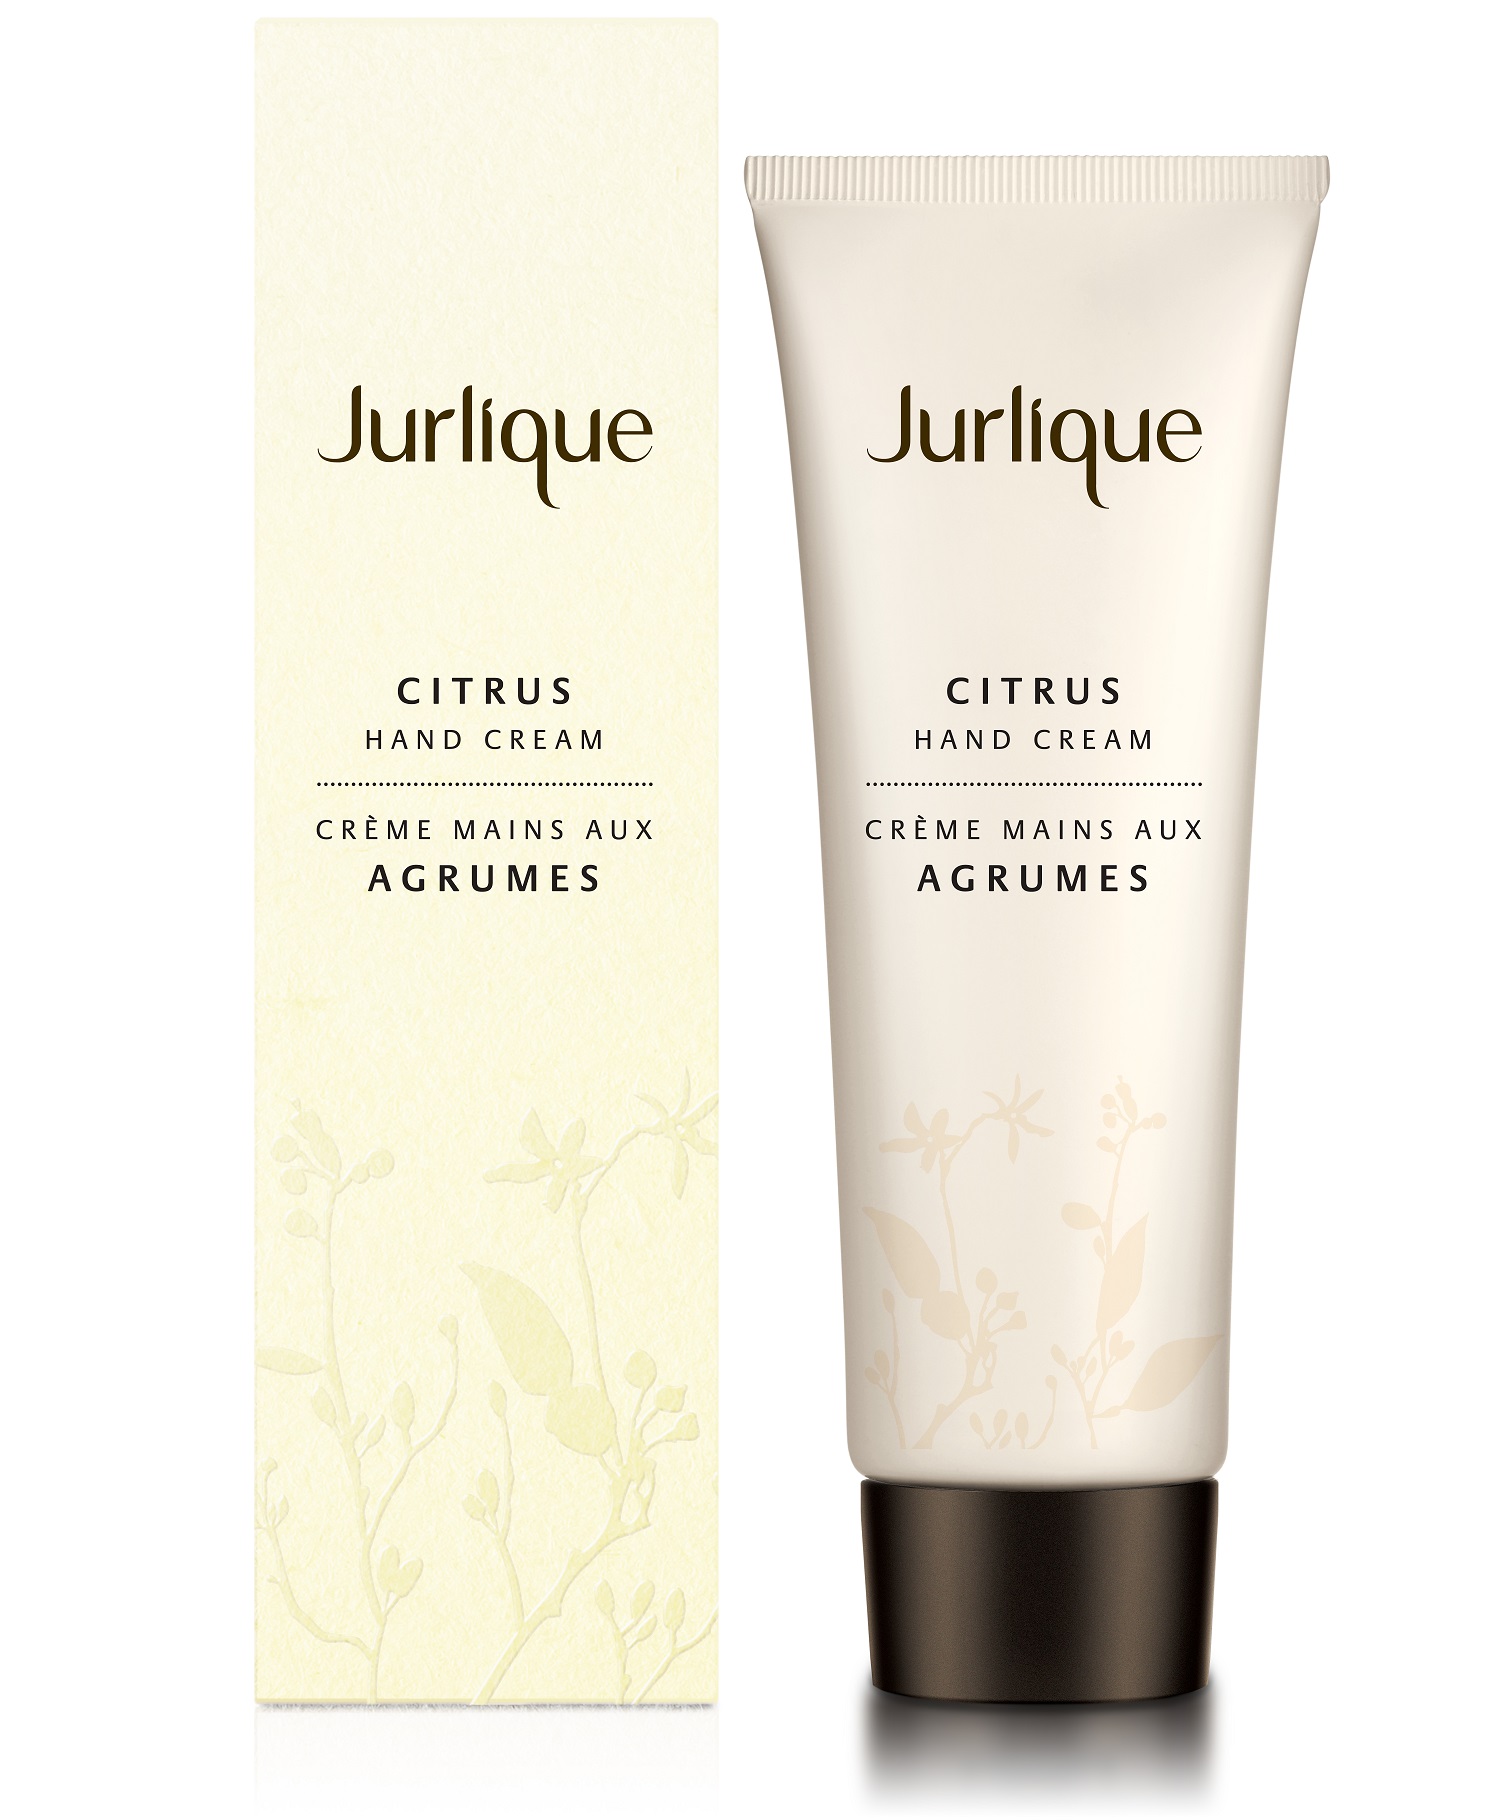 Billede af Jurlique Citrus Hand Cream, 125ml.